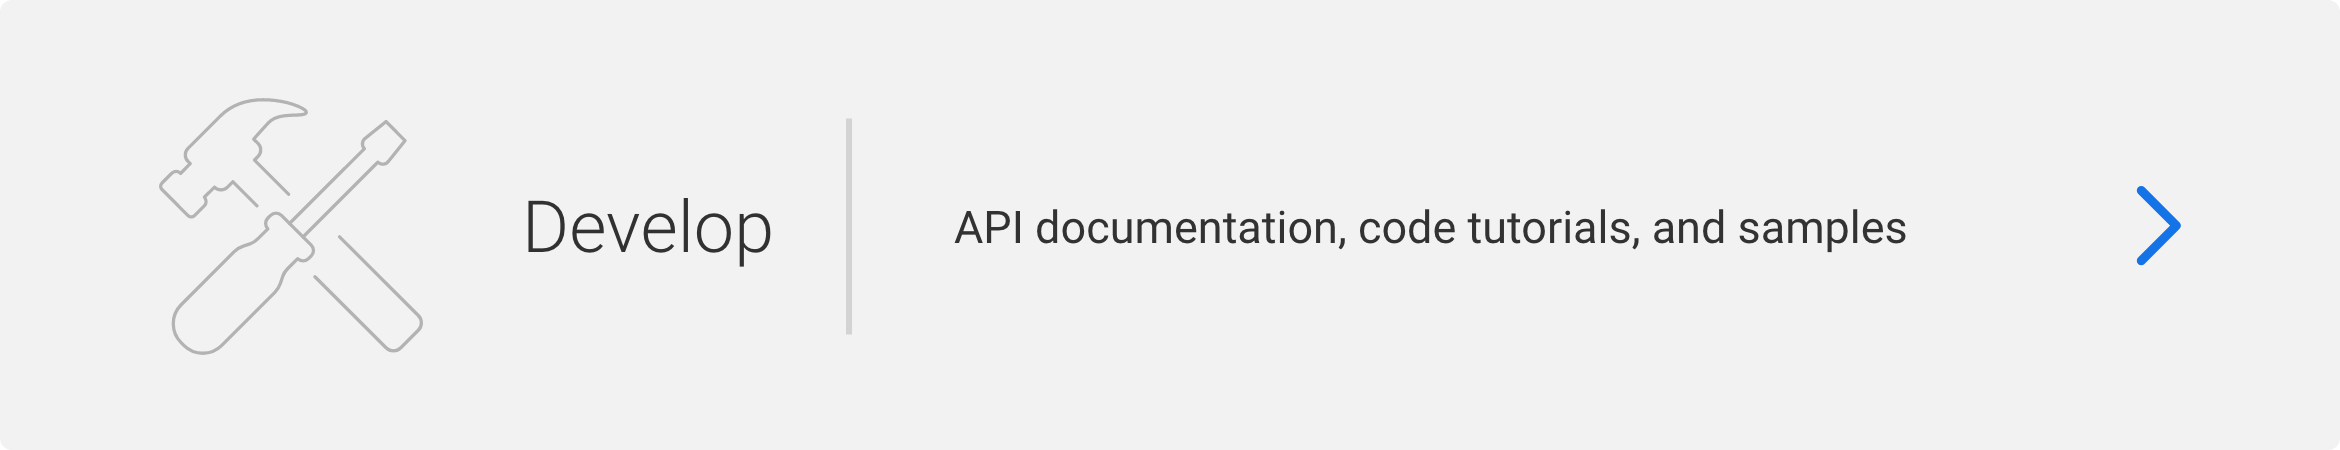 Develop: API documentation, code tutorials, and samples